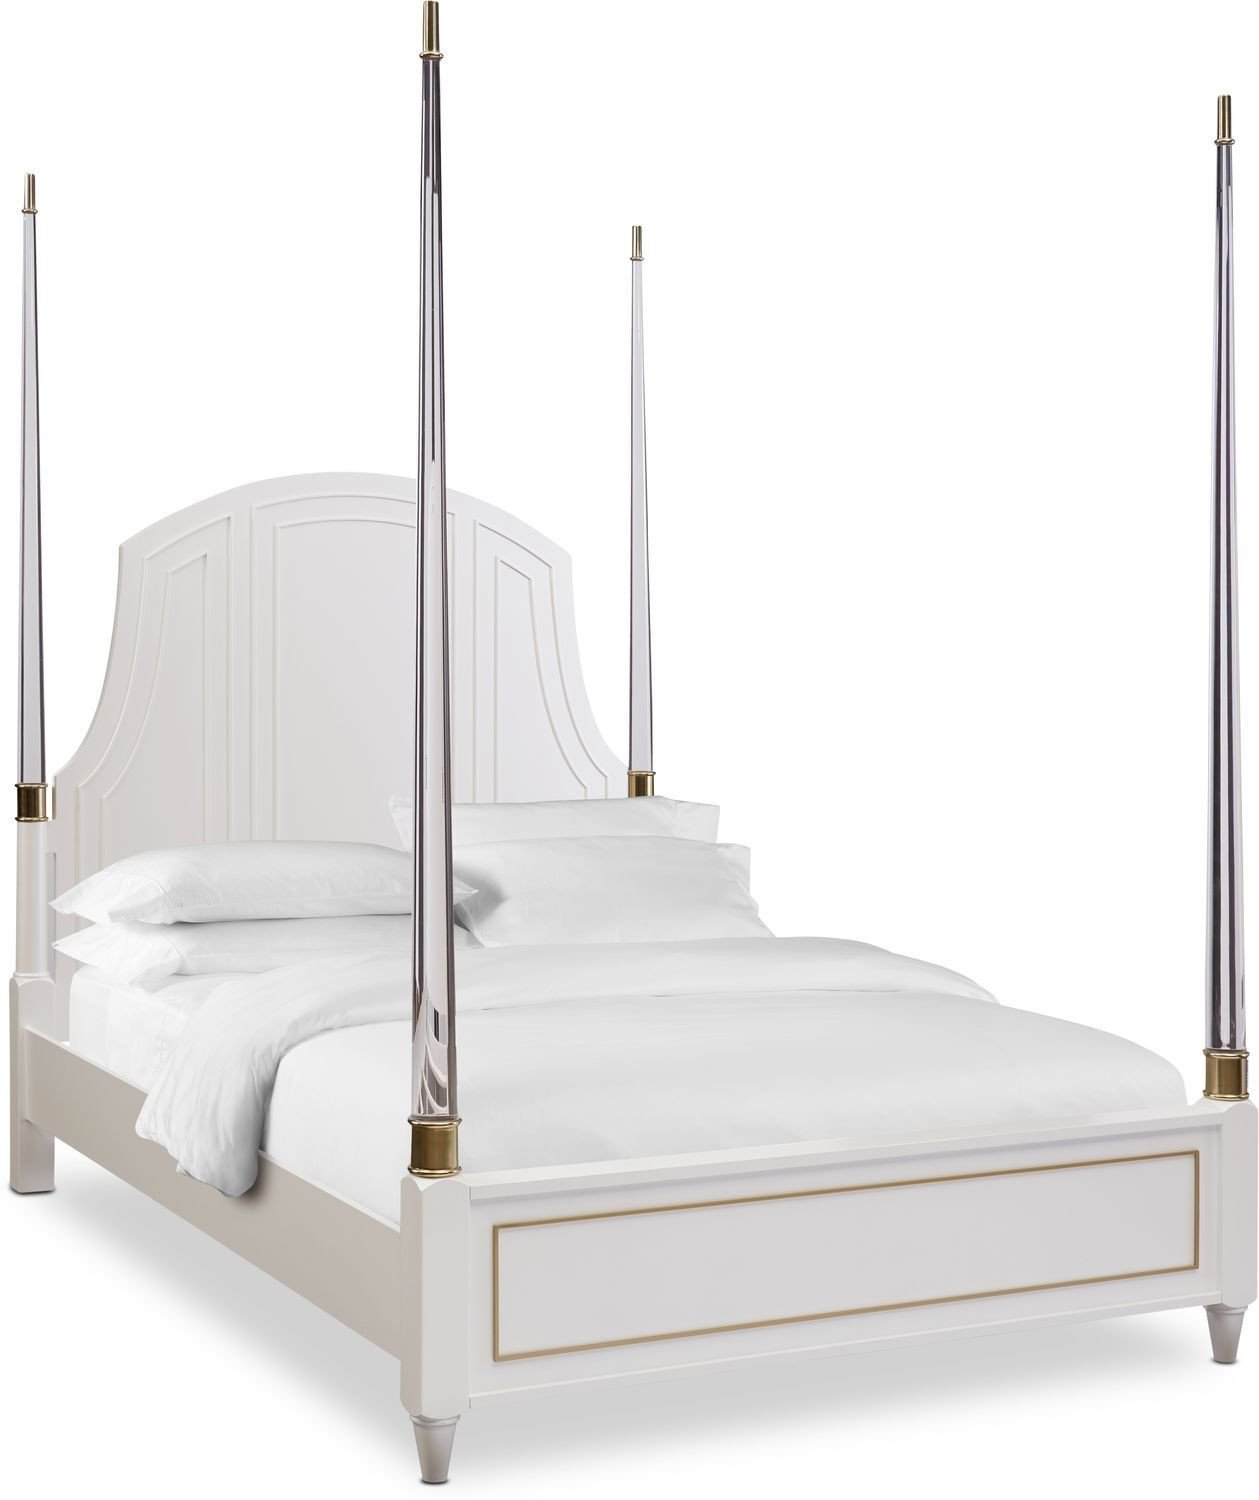 Value City Bedroom Set Best Of isabel King Post Bed Alabaster In 2019